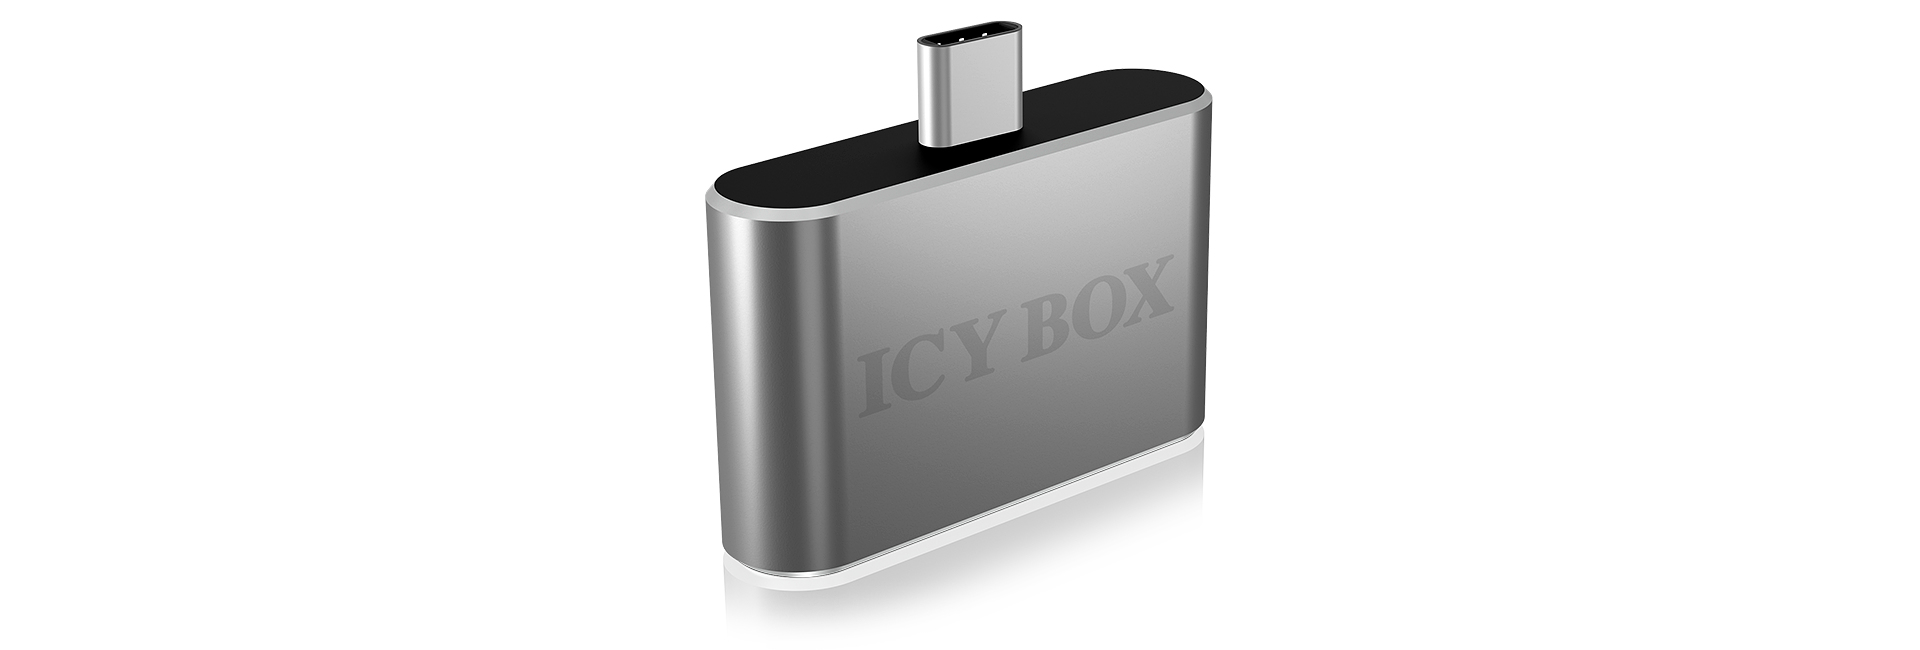 ICY BOX ICY BOX IB-Hub1201-C - Hub - 2 x USB 2.0